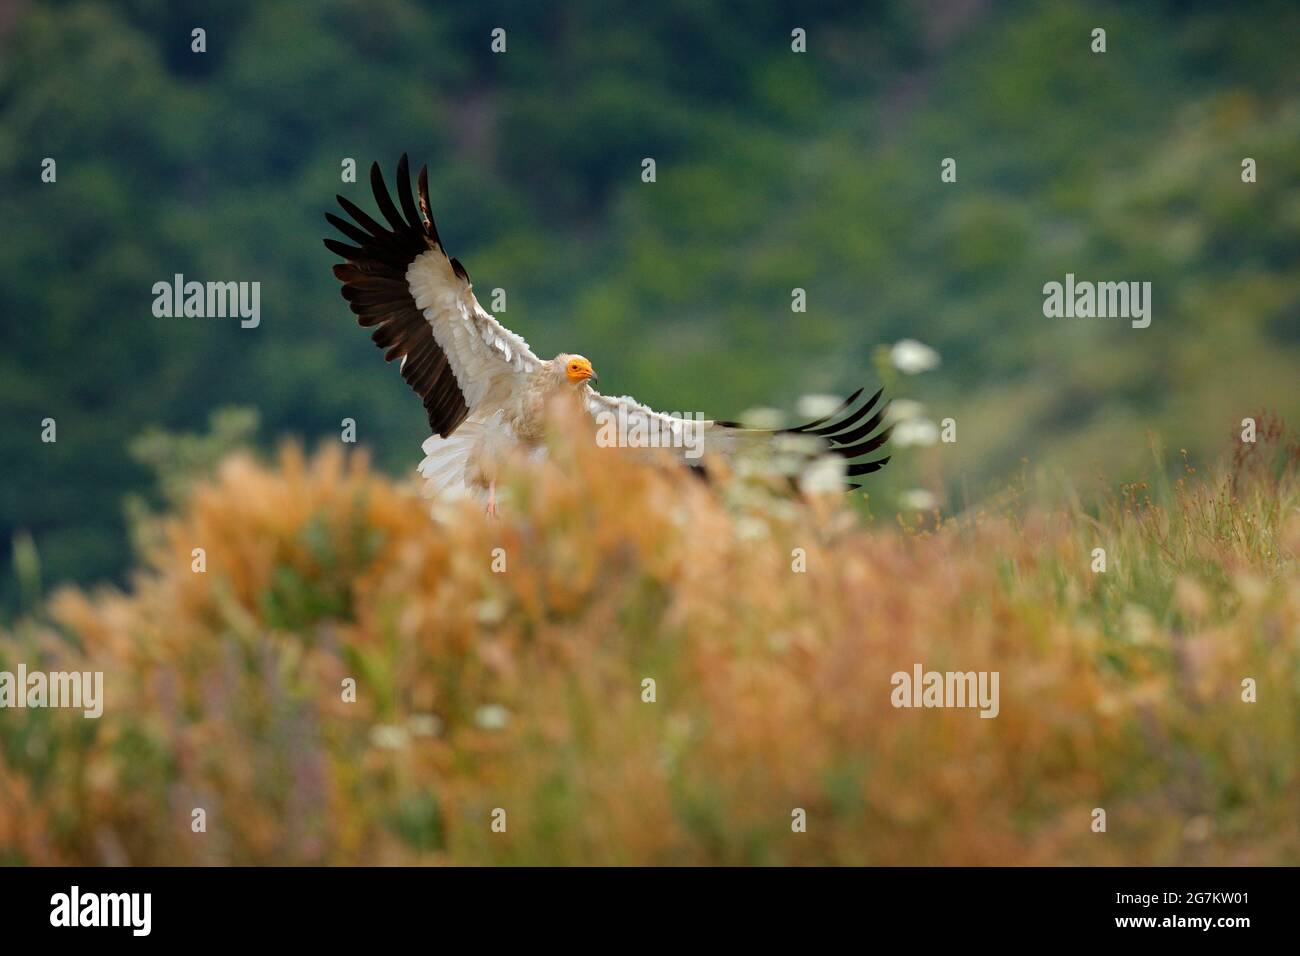 Avvoltoio egiziano, Neophron percnopterus, grande uccello di preda seduto sulla pietra in habitat naturale, Madzarovo, Bulgaria, Rodopi orientali. Avvoltoio bianco Foto Stock